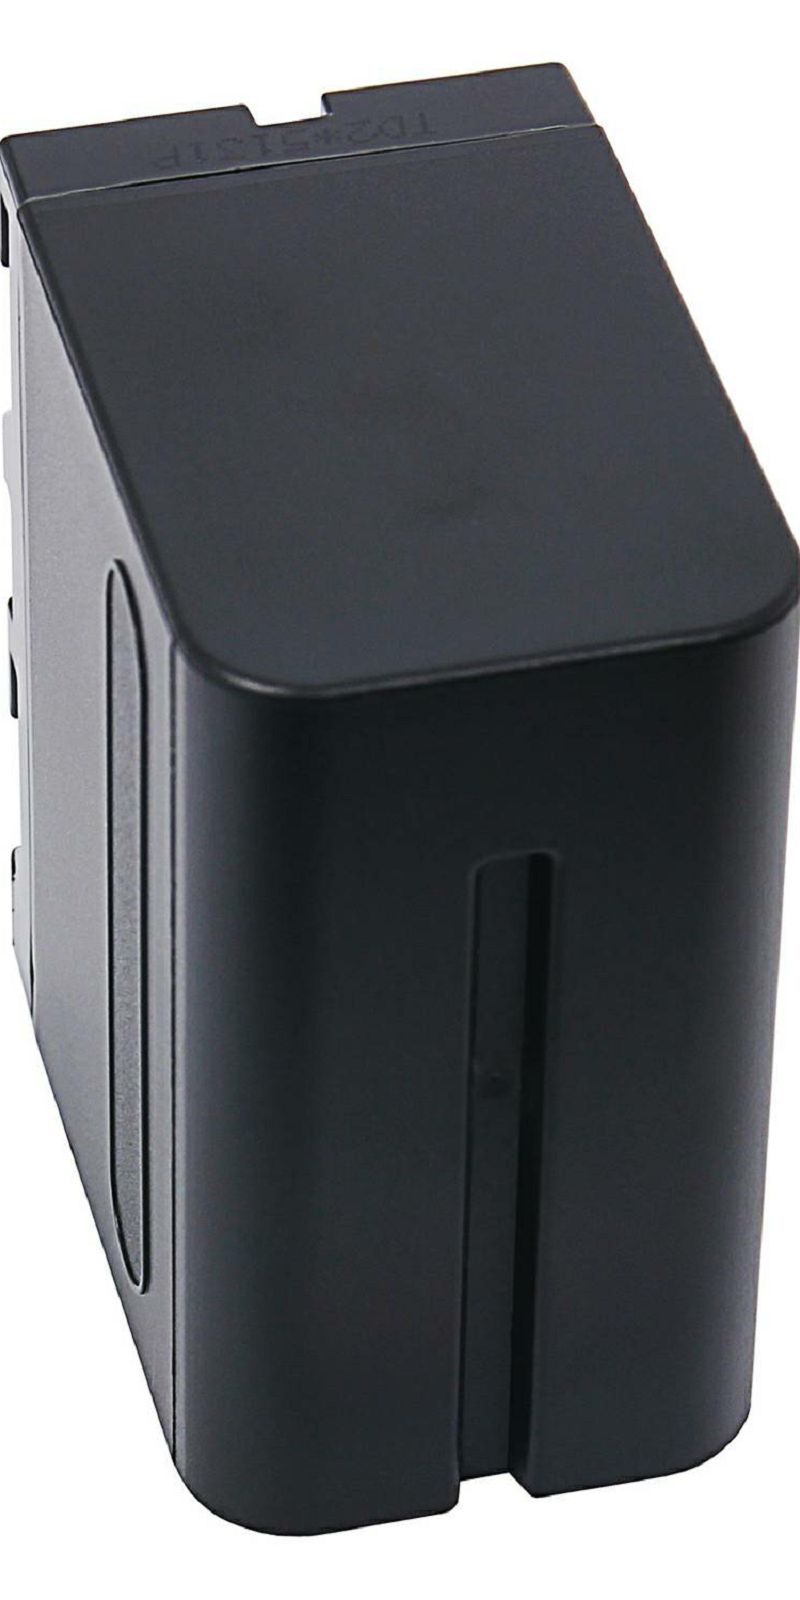 Patona baterija za Sony NP-F970 Protect 10500mAh NP-F970 NP-F960